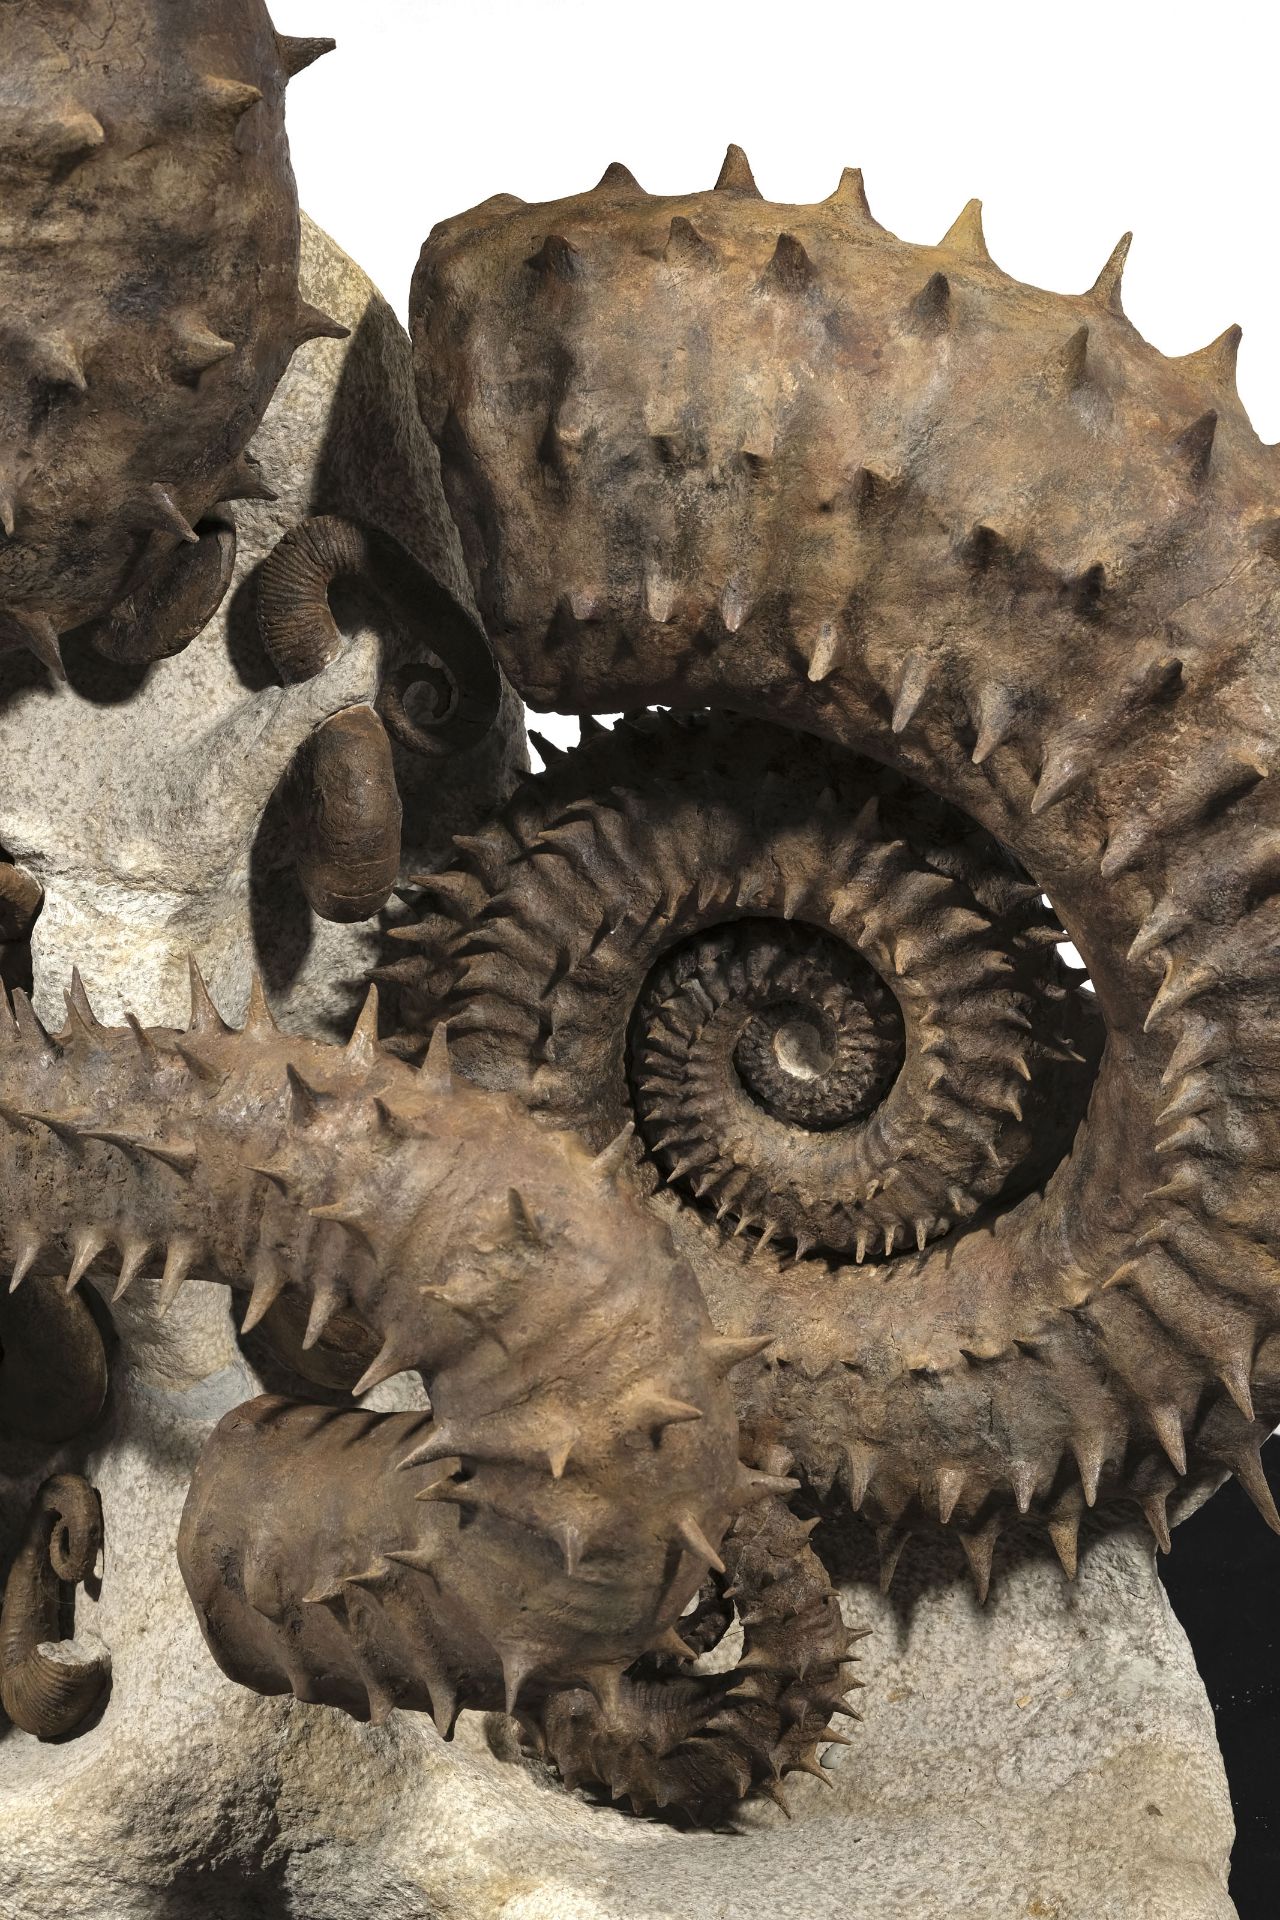 Cimetière marin d'ammonites déroulées épineuses, Maroc (région d'Agadir), h. 105 cm - Image 2 of 4